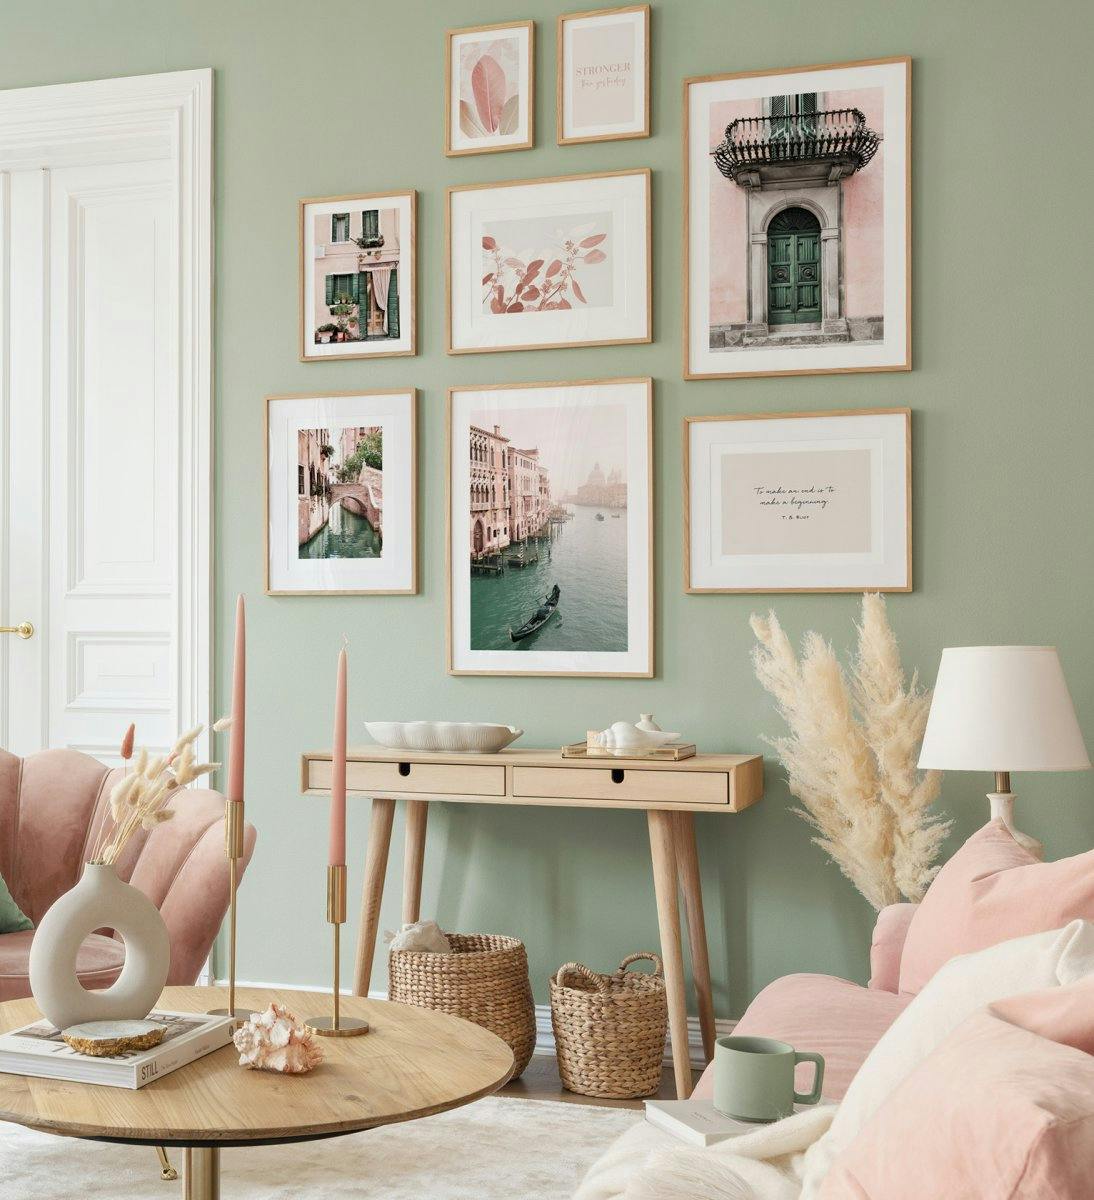 Affiches aux couleurs pastel créent une atmosphère enjouée et fraiche dans le salon